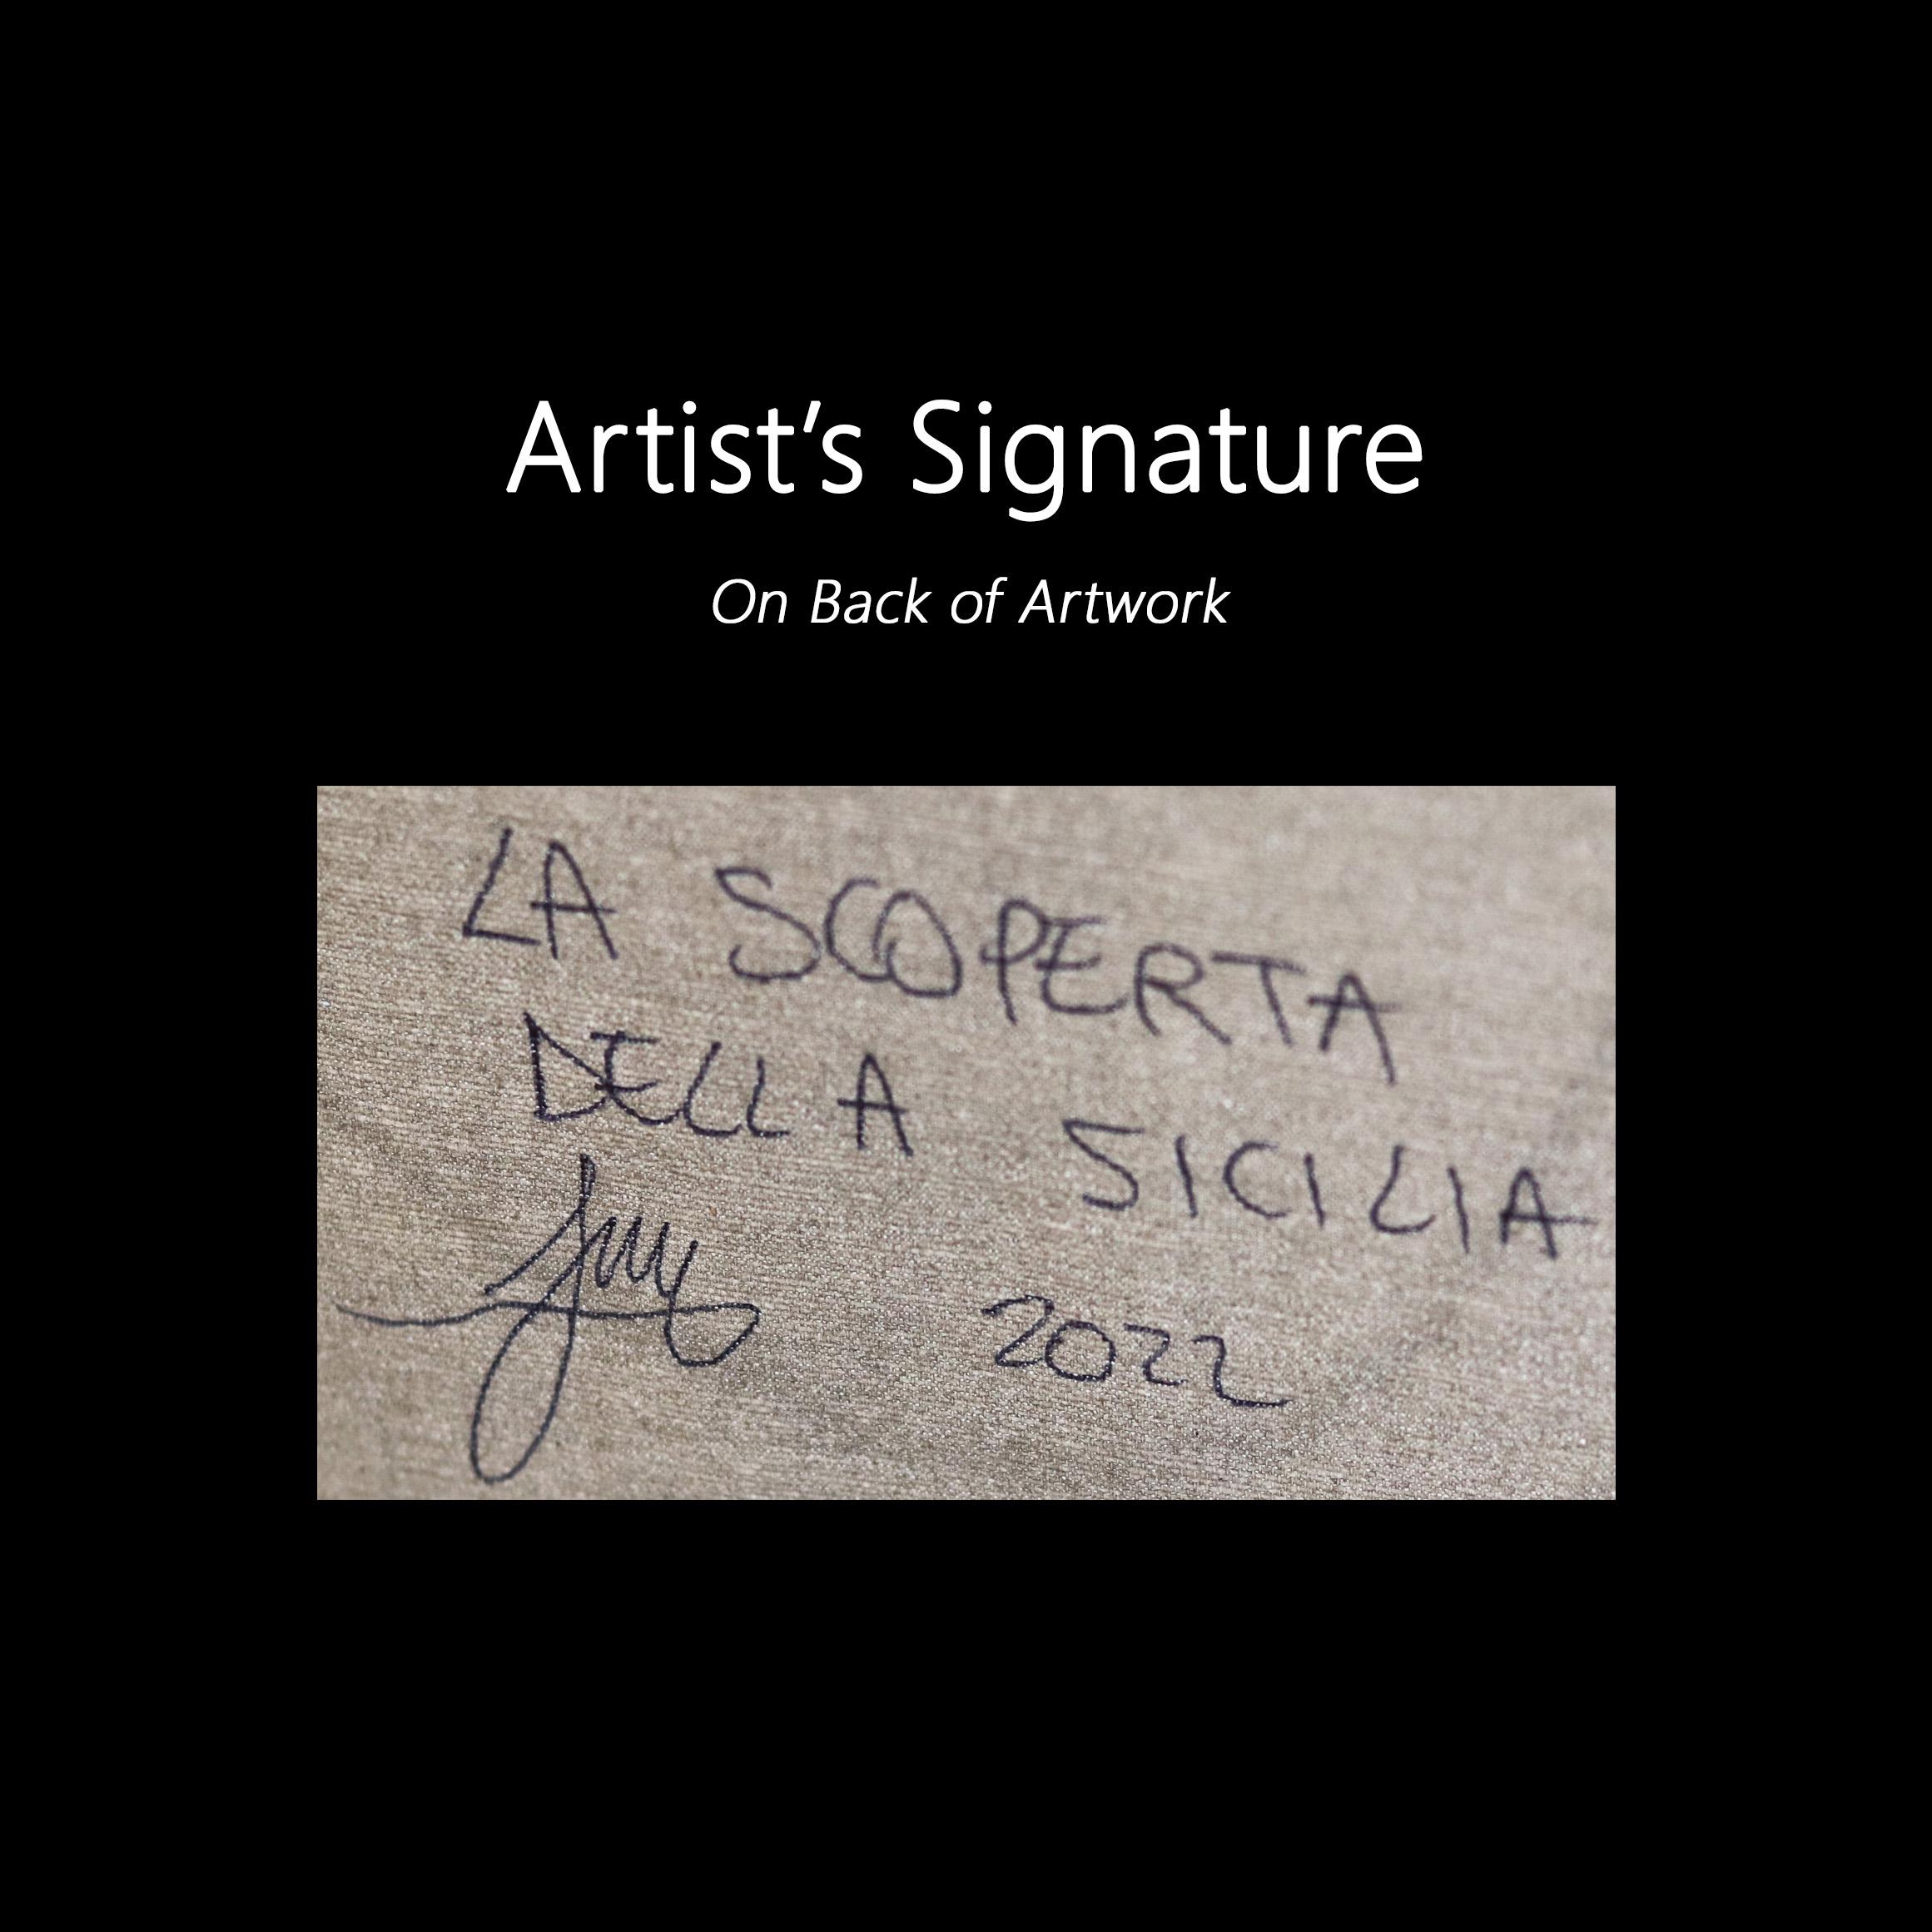 La Scoperta Della Sicilia - Original Figurative Cubist Painting on Canvas For Sale 7